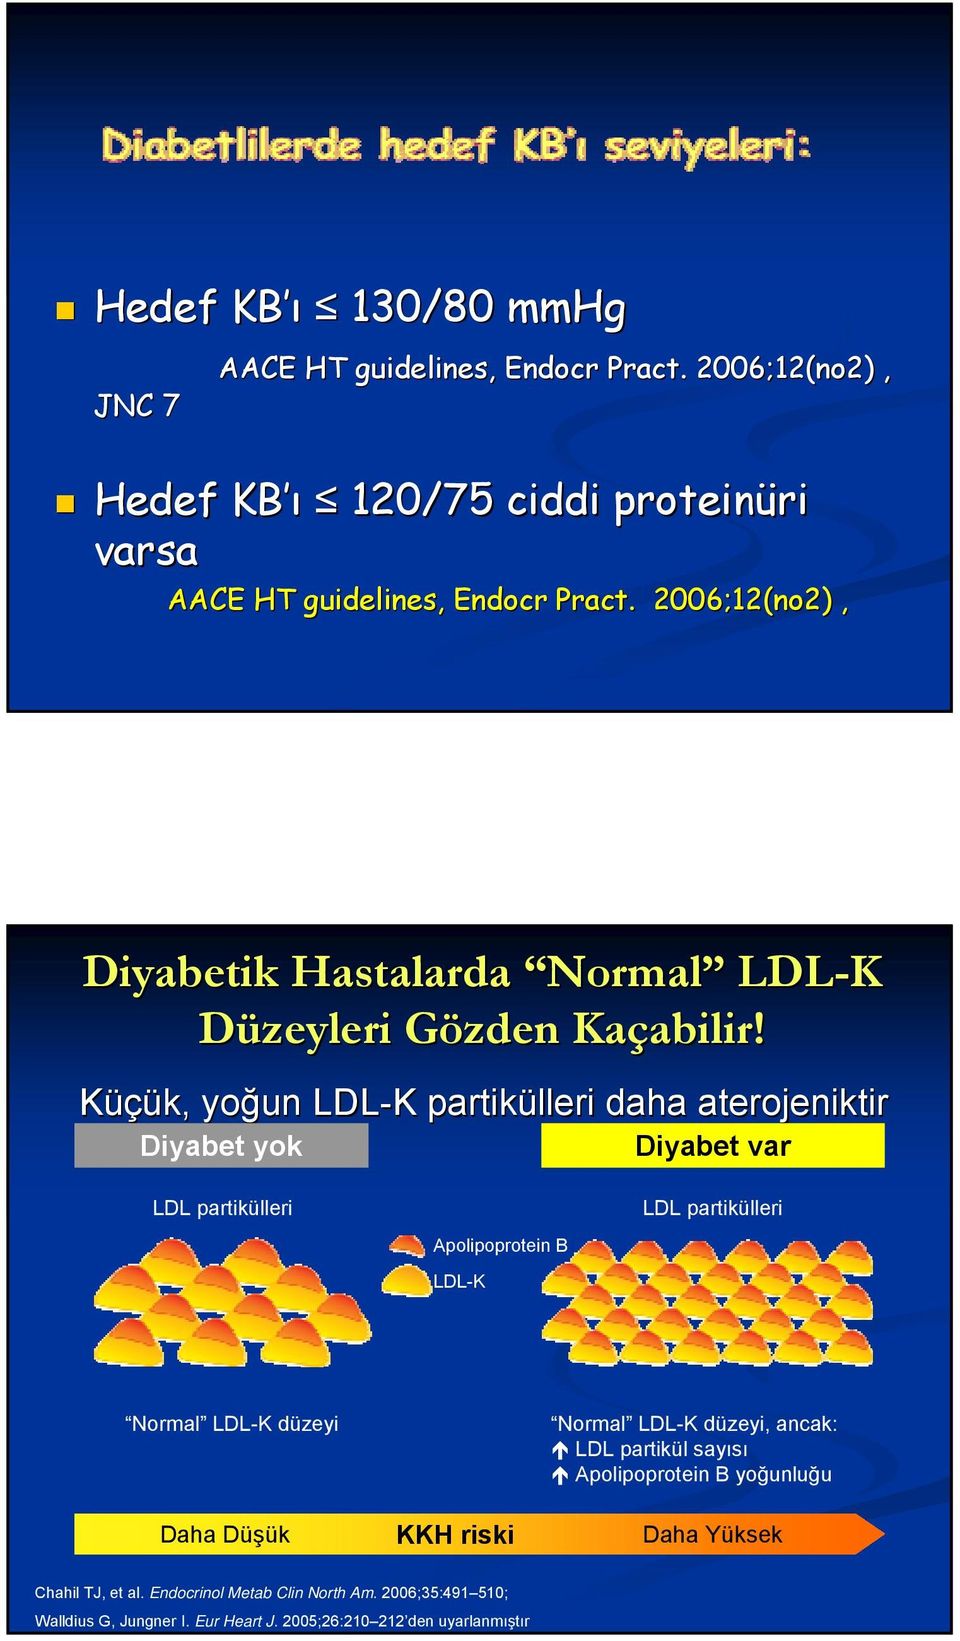 Küçük, yoğun LDL-K partikülleri leri daha aterojeni eniktir Diyabet yok Diyabet var LDL partikülleri Apolipoprotein B LDL-K LDL partikülleri Normal LDL-K